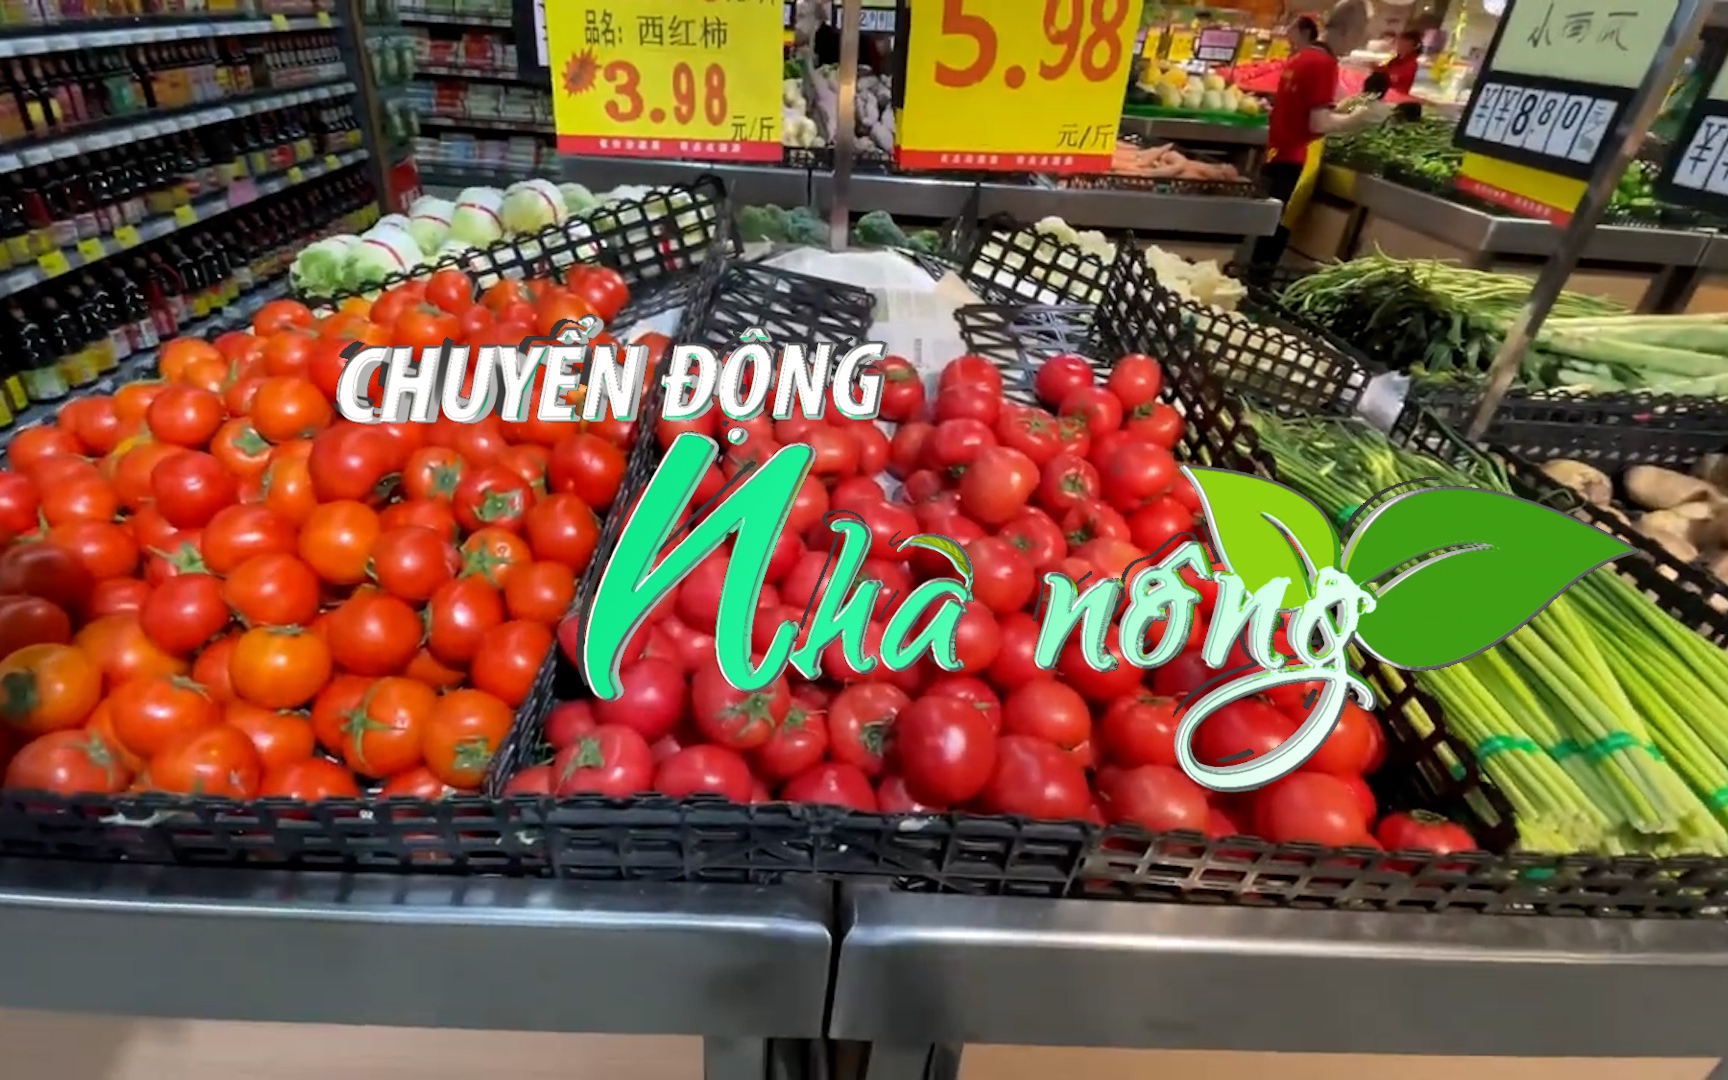 Chuyển động Nhà nông 12/3: Việt Nam trở thành quốc gia xuất khẩu rau quả lớn thứ 2 sang Trung Quốc